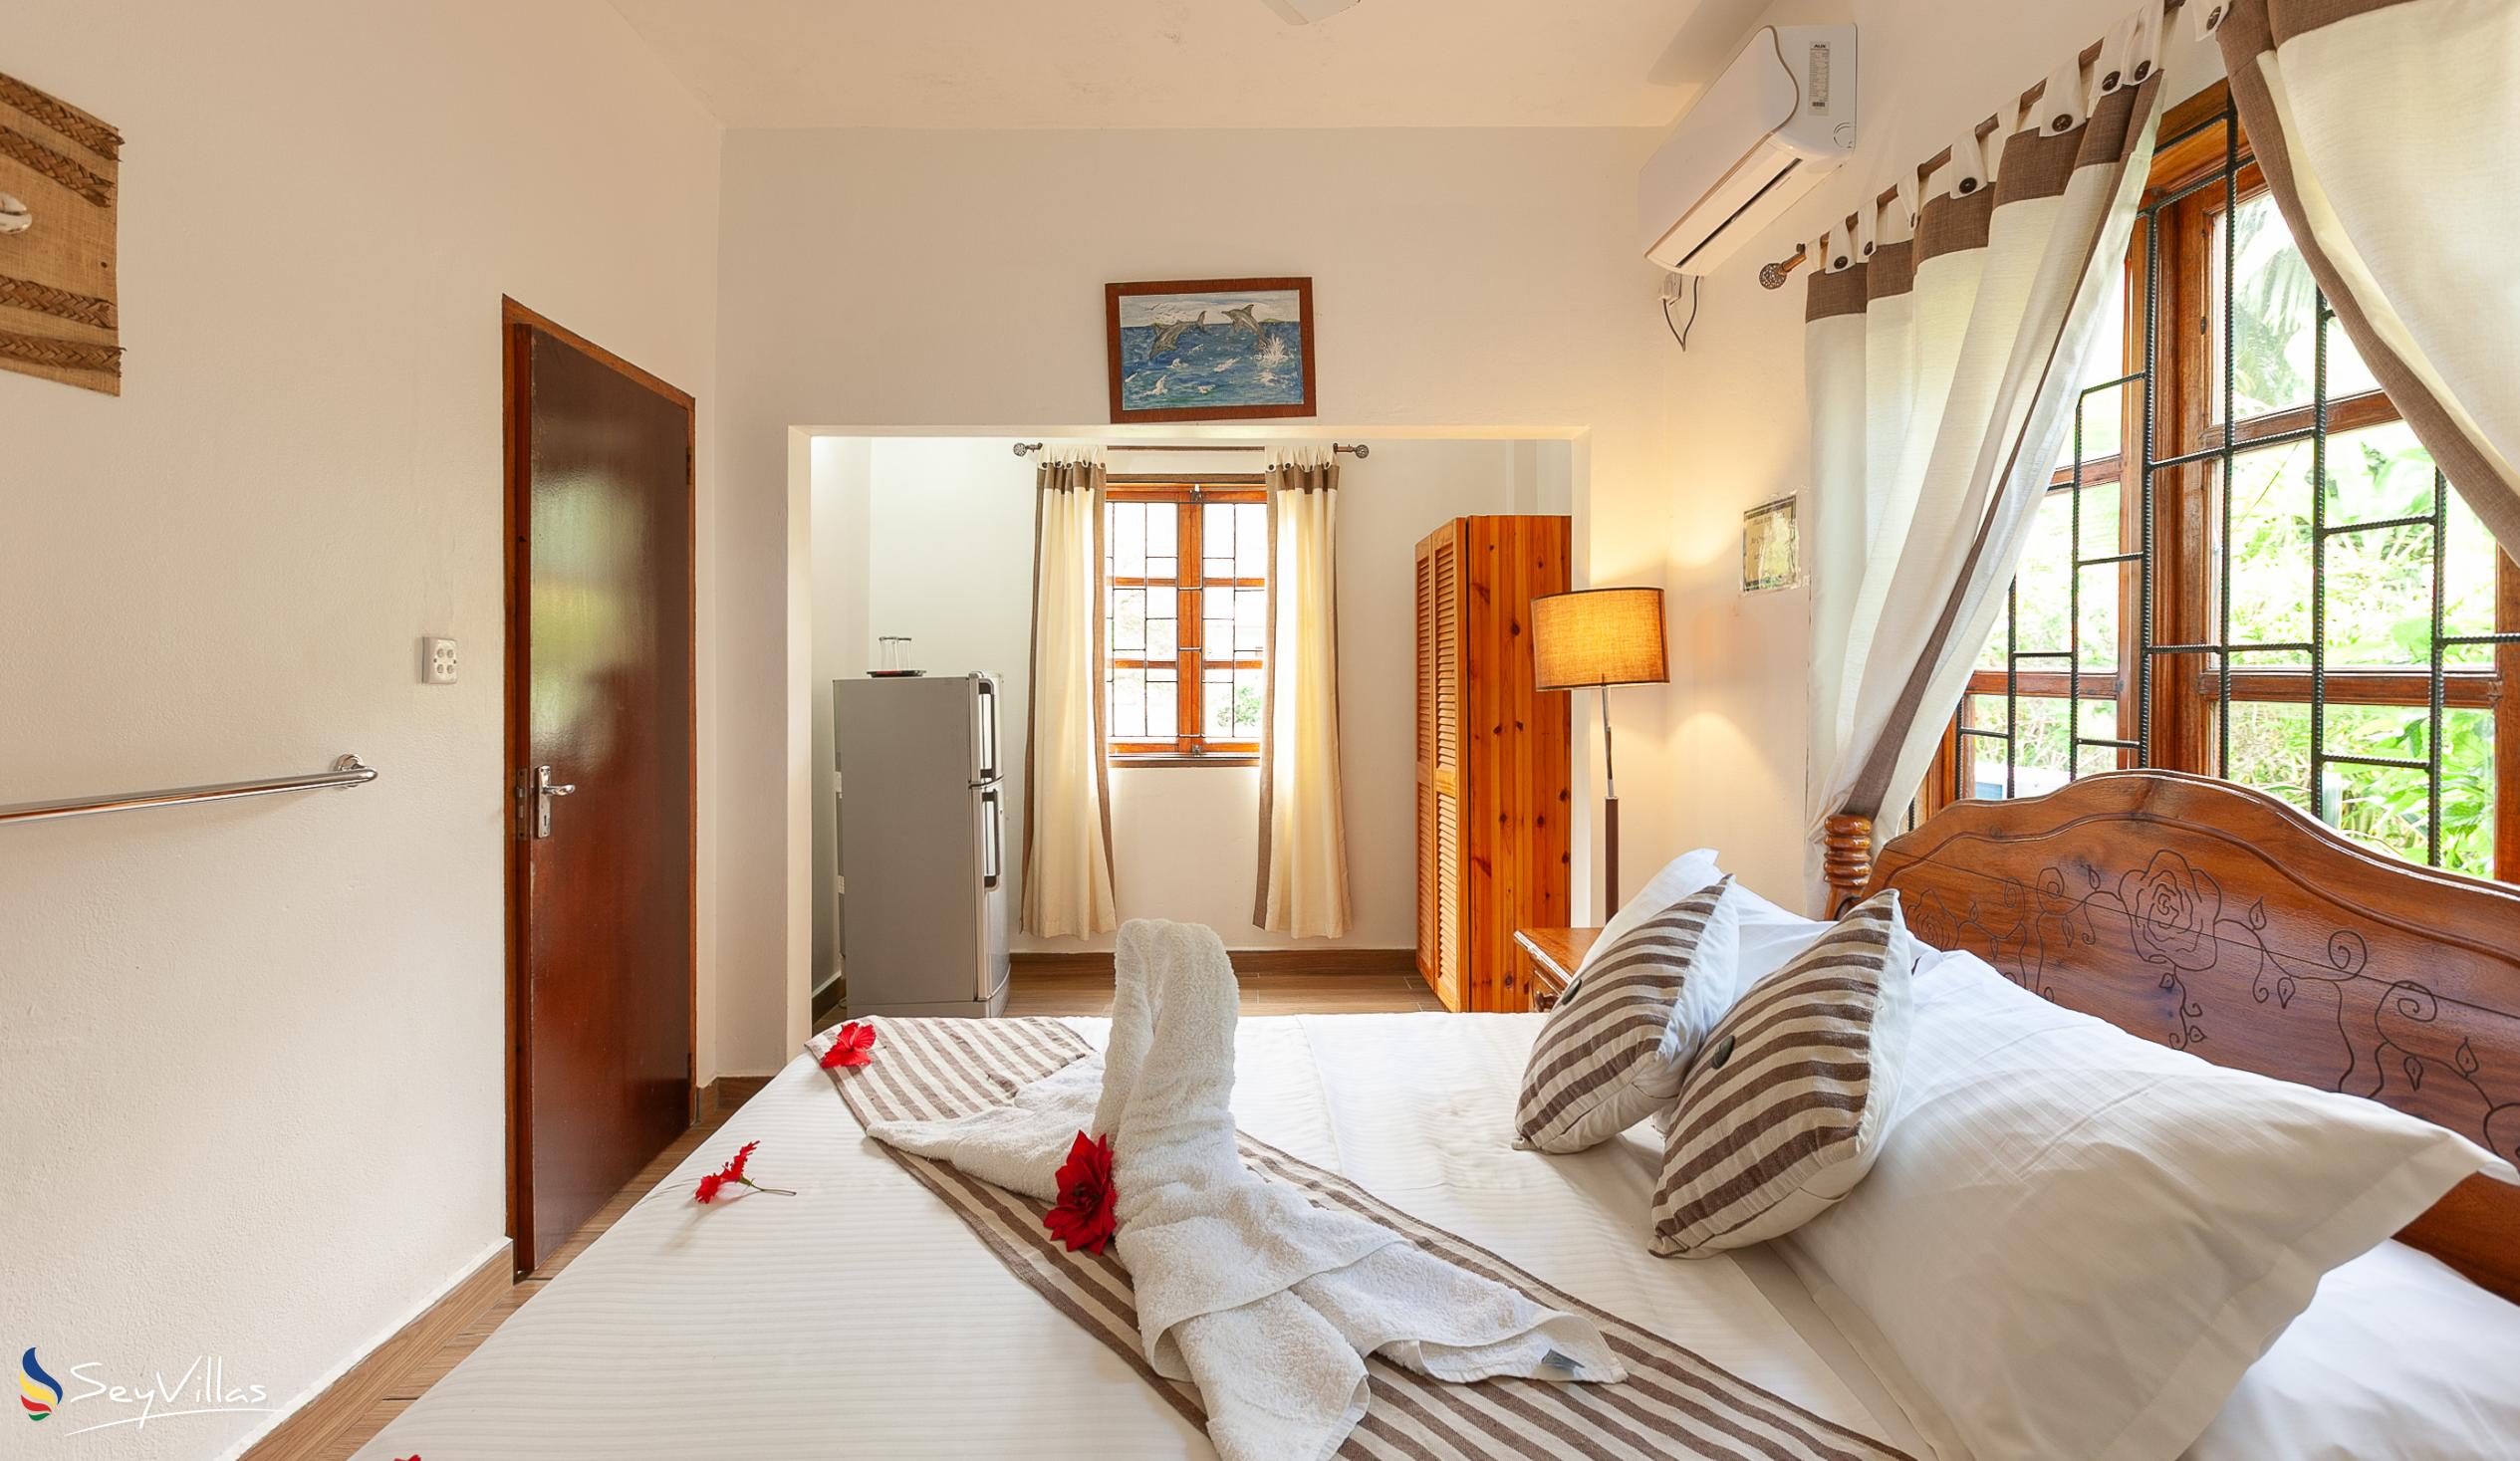 Photo 73: Tannette's Villa - Standard Double Room - La Digue (Seychelles)